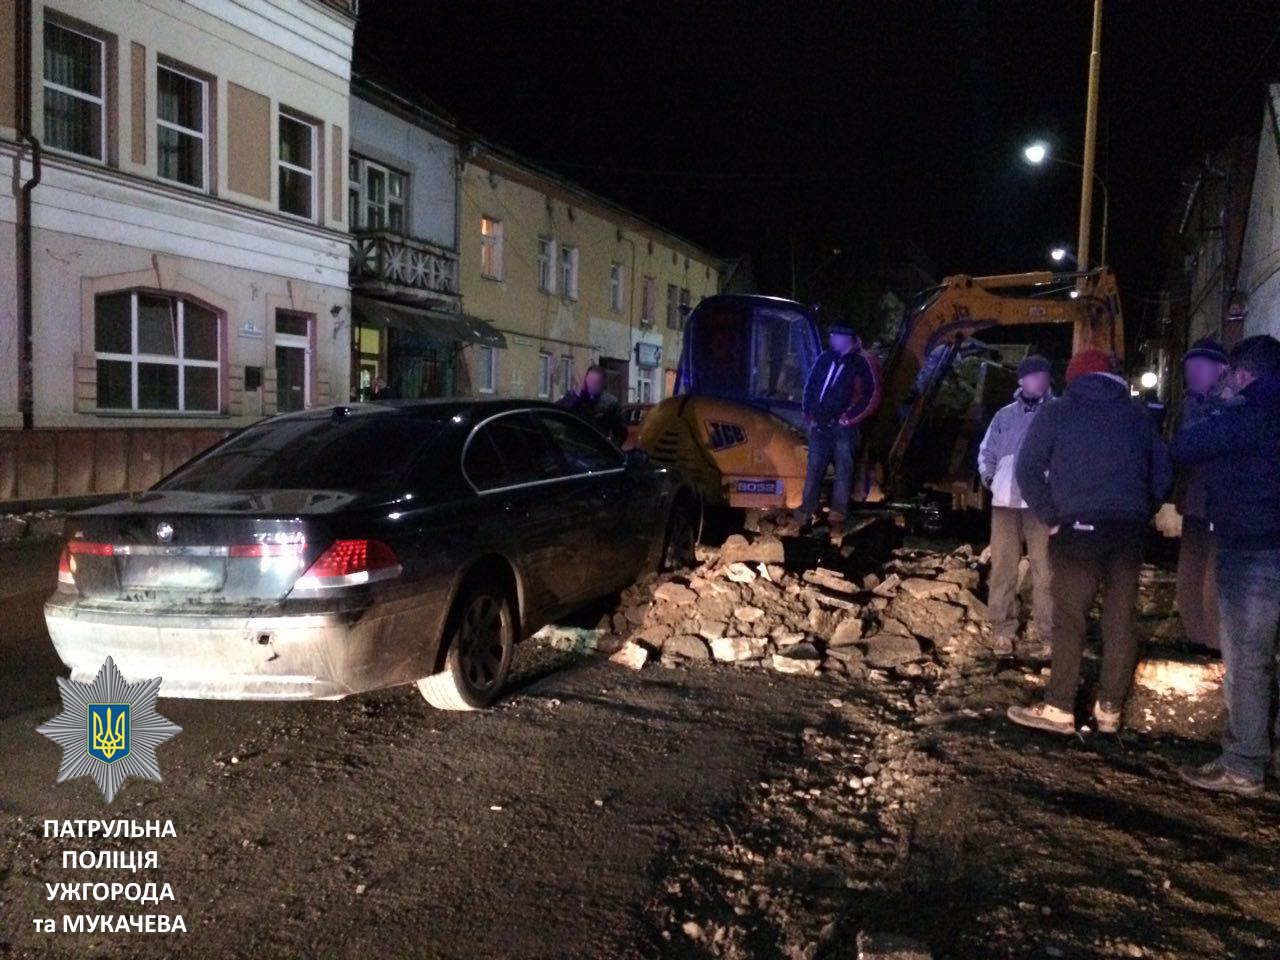 Прибыв на место происшествия полицейские обнаружили автомобиль BMW без номерных знаков, который столкнулся с трактором, выполнял ремонтные работы. 